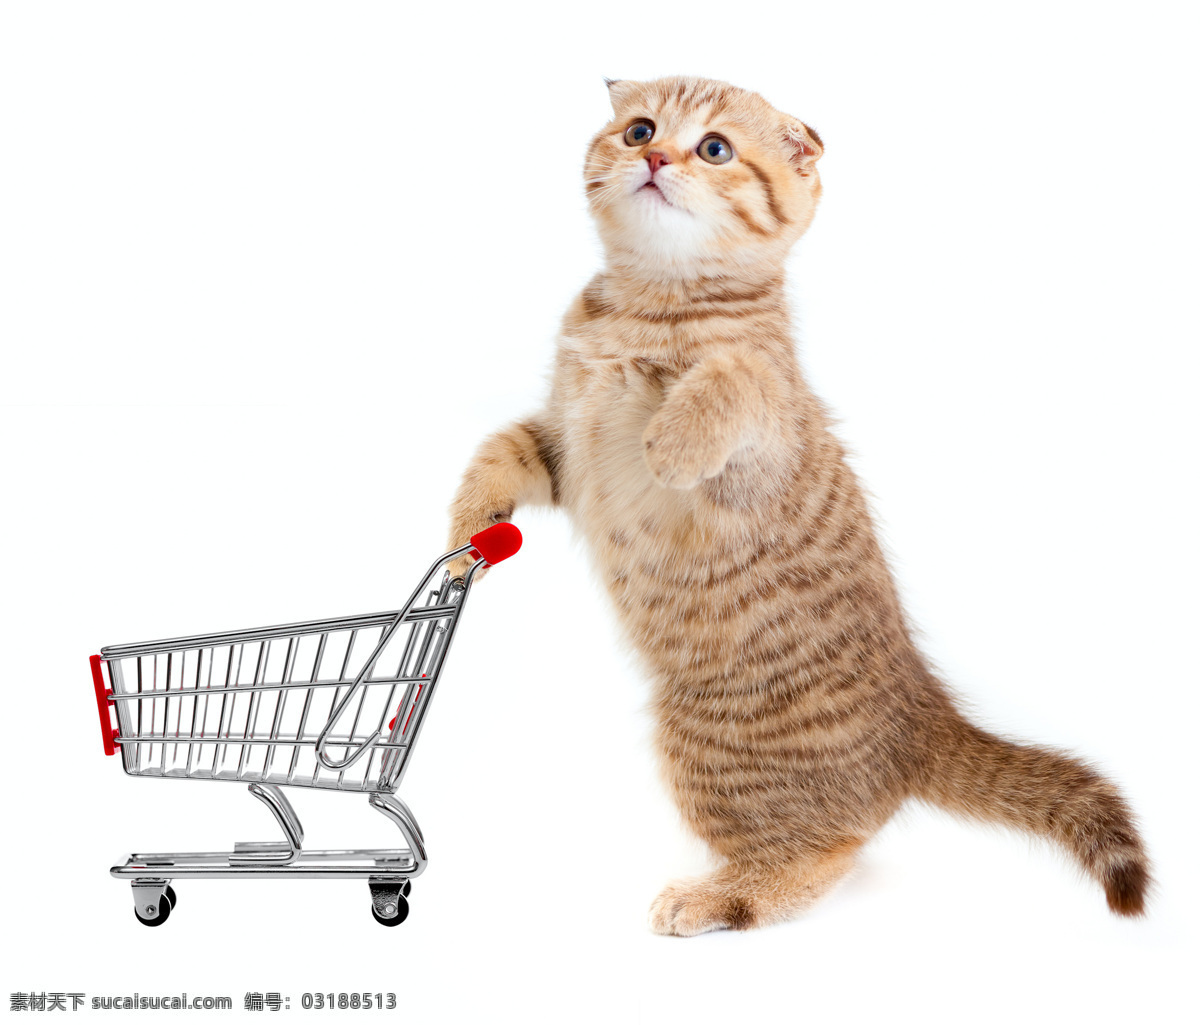 推 购物车 小猫 猫咪 花猫 猫 家禽 懒猫 宠物猫 宠物 家猫 猫猫 动物 家禽家畜 动物世界 生物世界